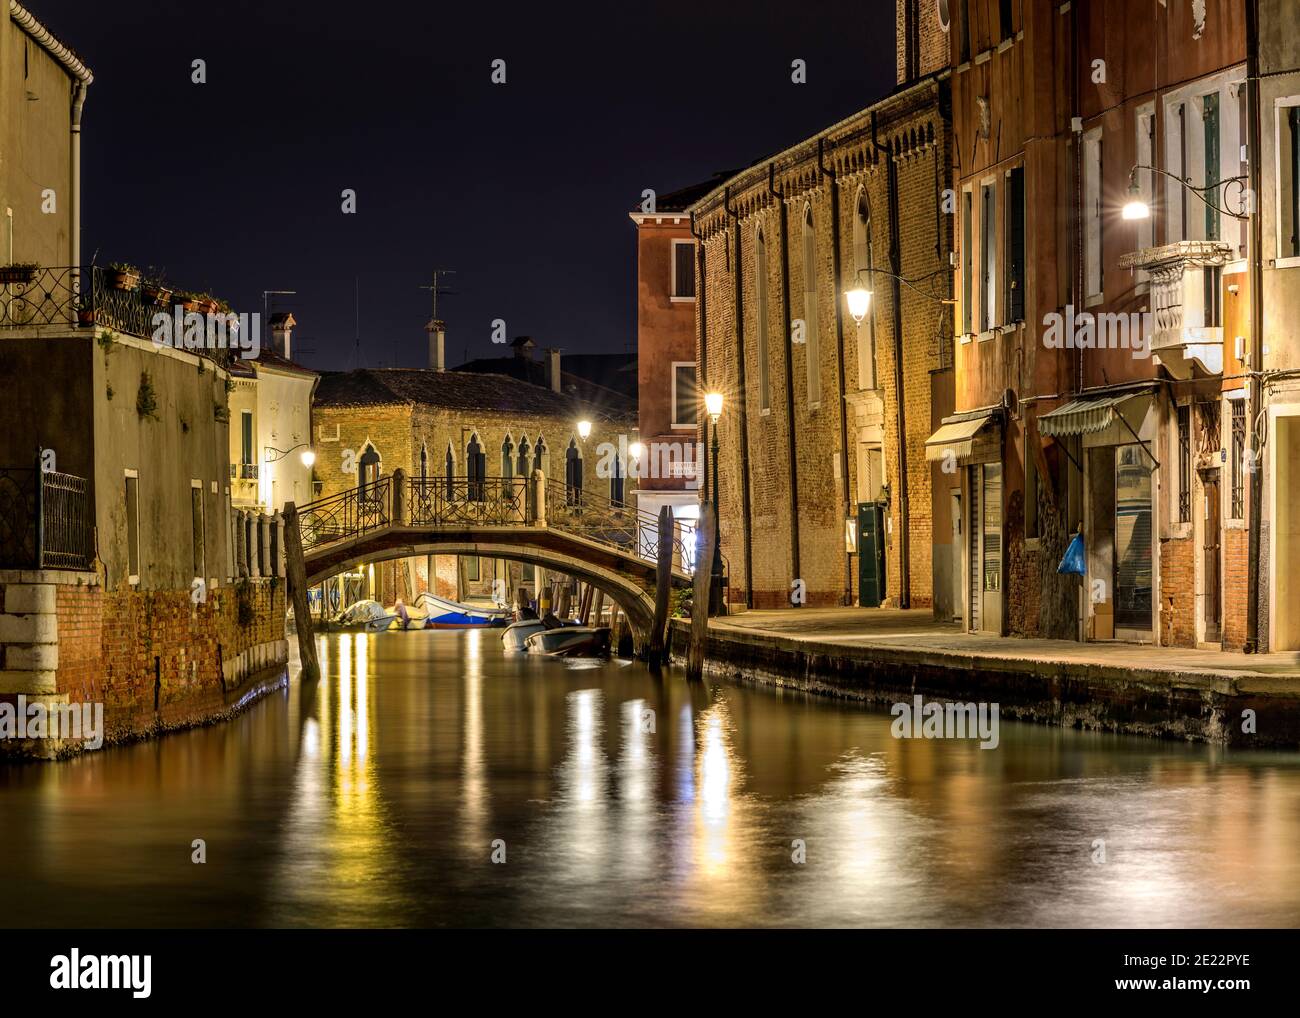 Nuit à Murano - vue de nuit sur un petit vieux pont en briques, Ponte San Pietro Martyre, traversant une voie d'eau étroite, au centre de Murano, Italie. Banque D'Images